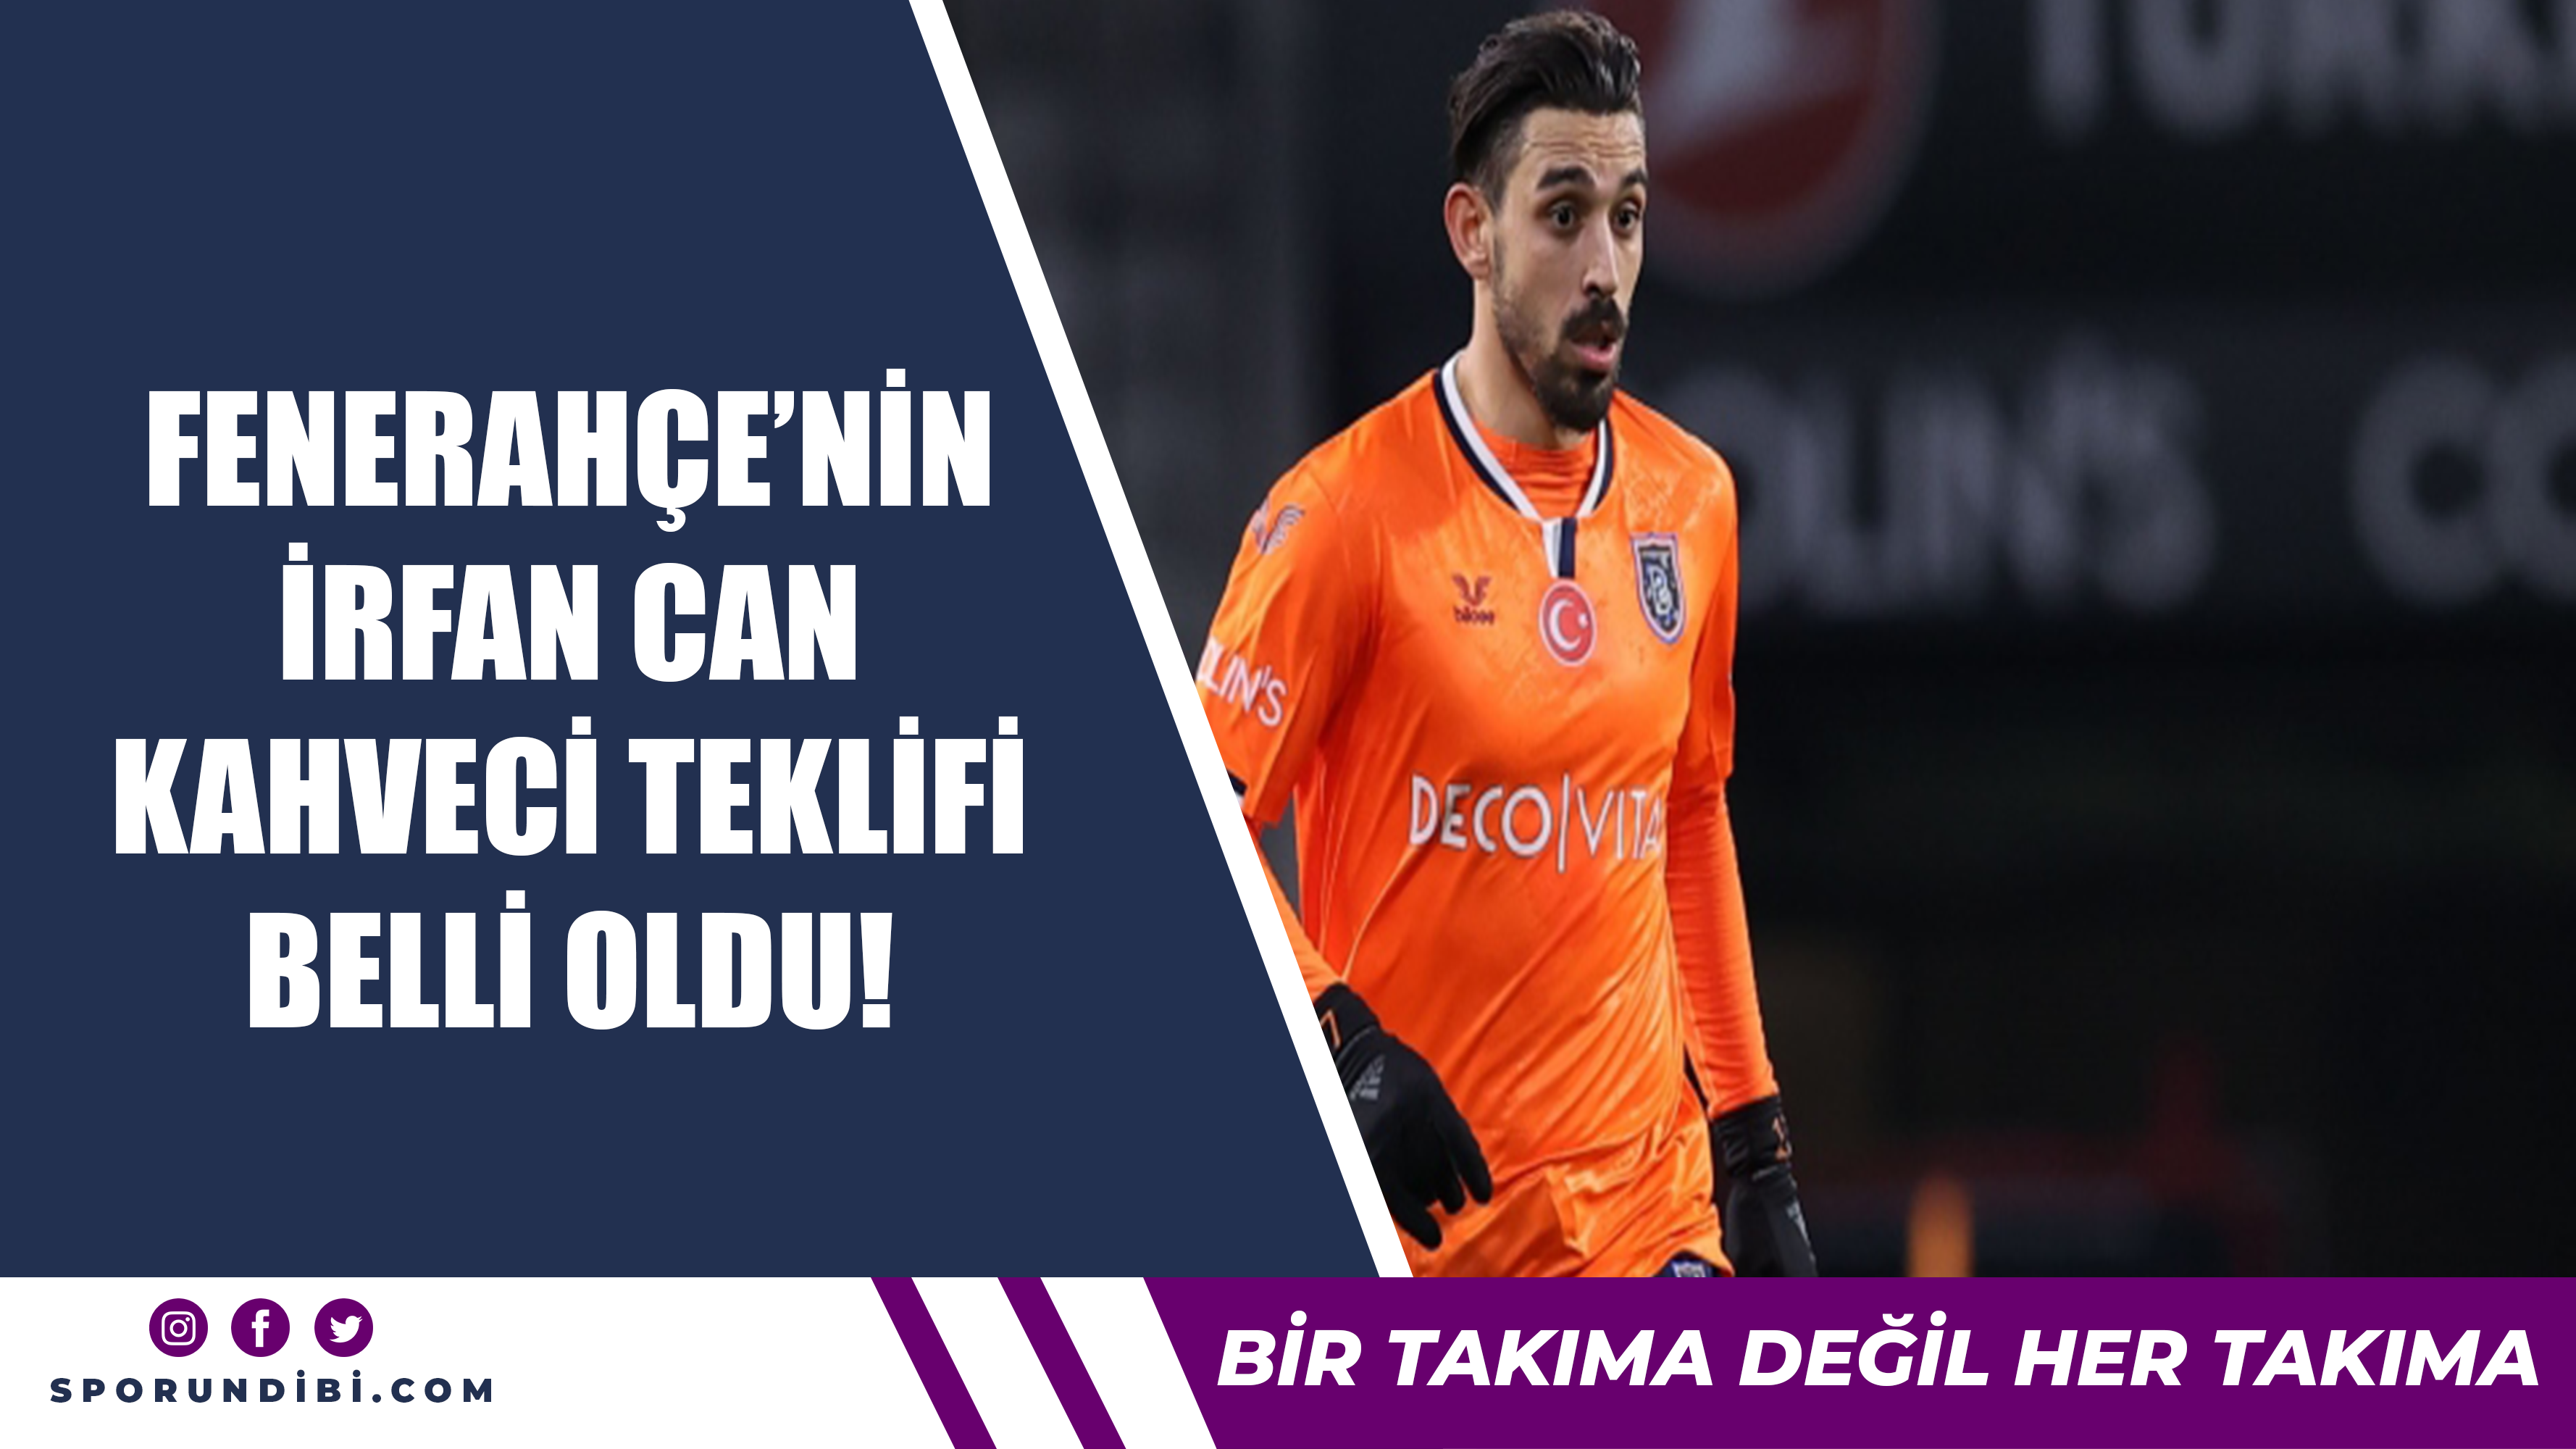 Fenerbahçe'nin İrfan Can Kahveci teklifi belli oldu!